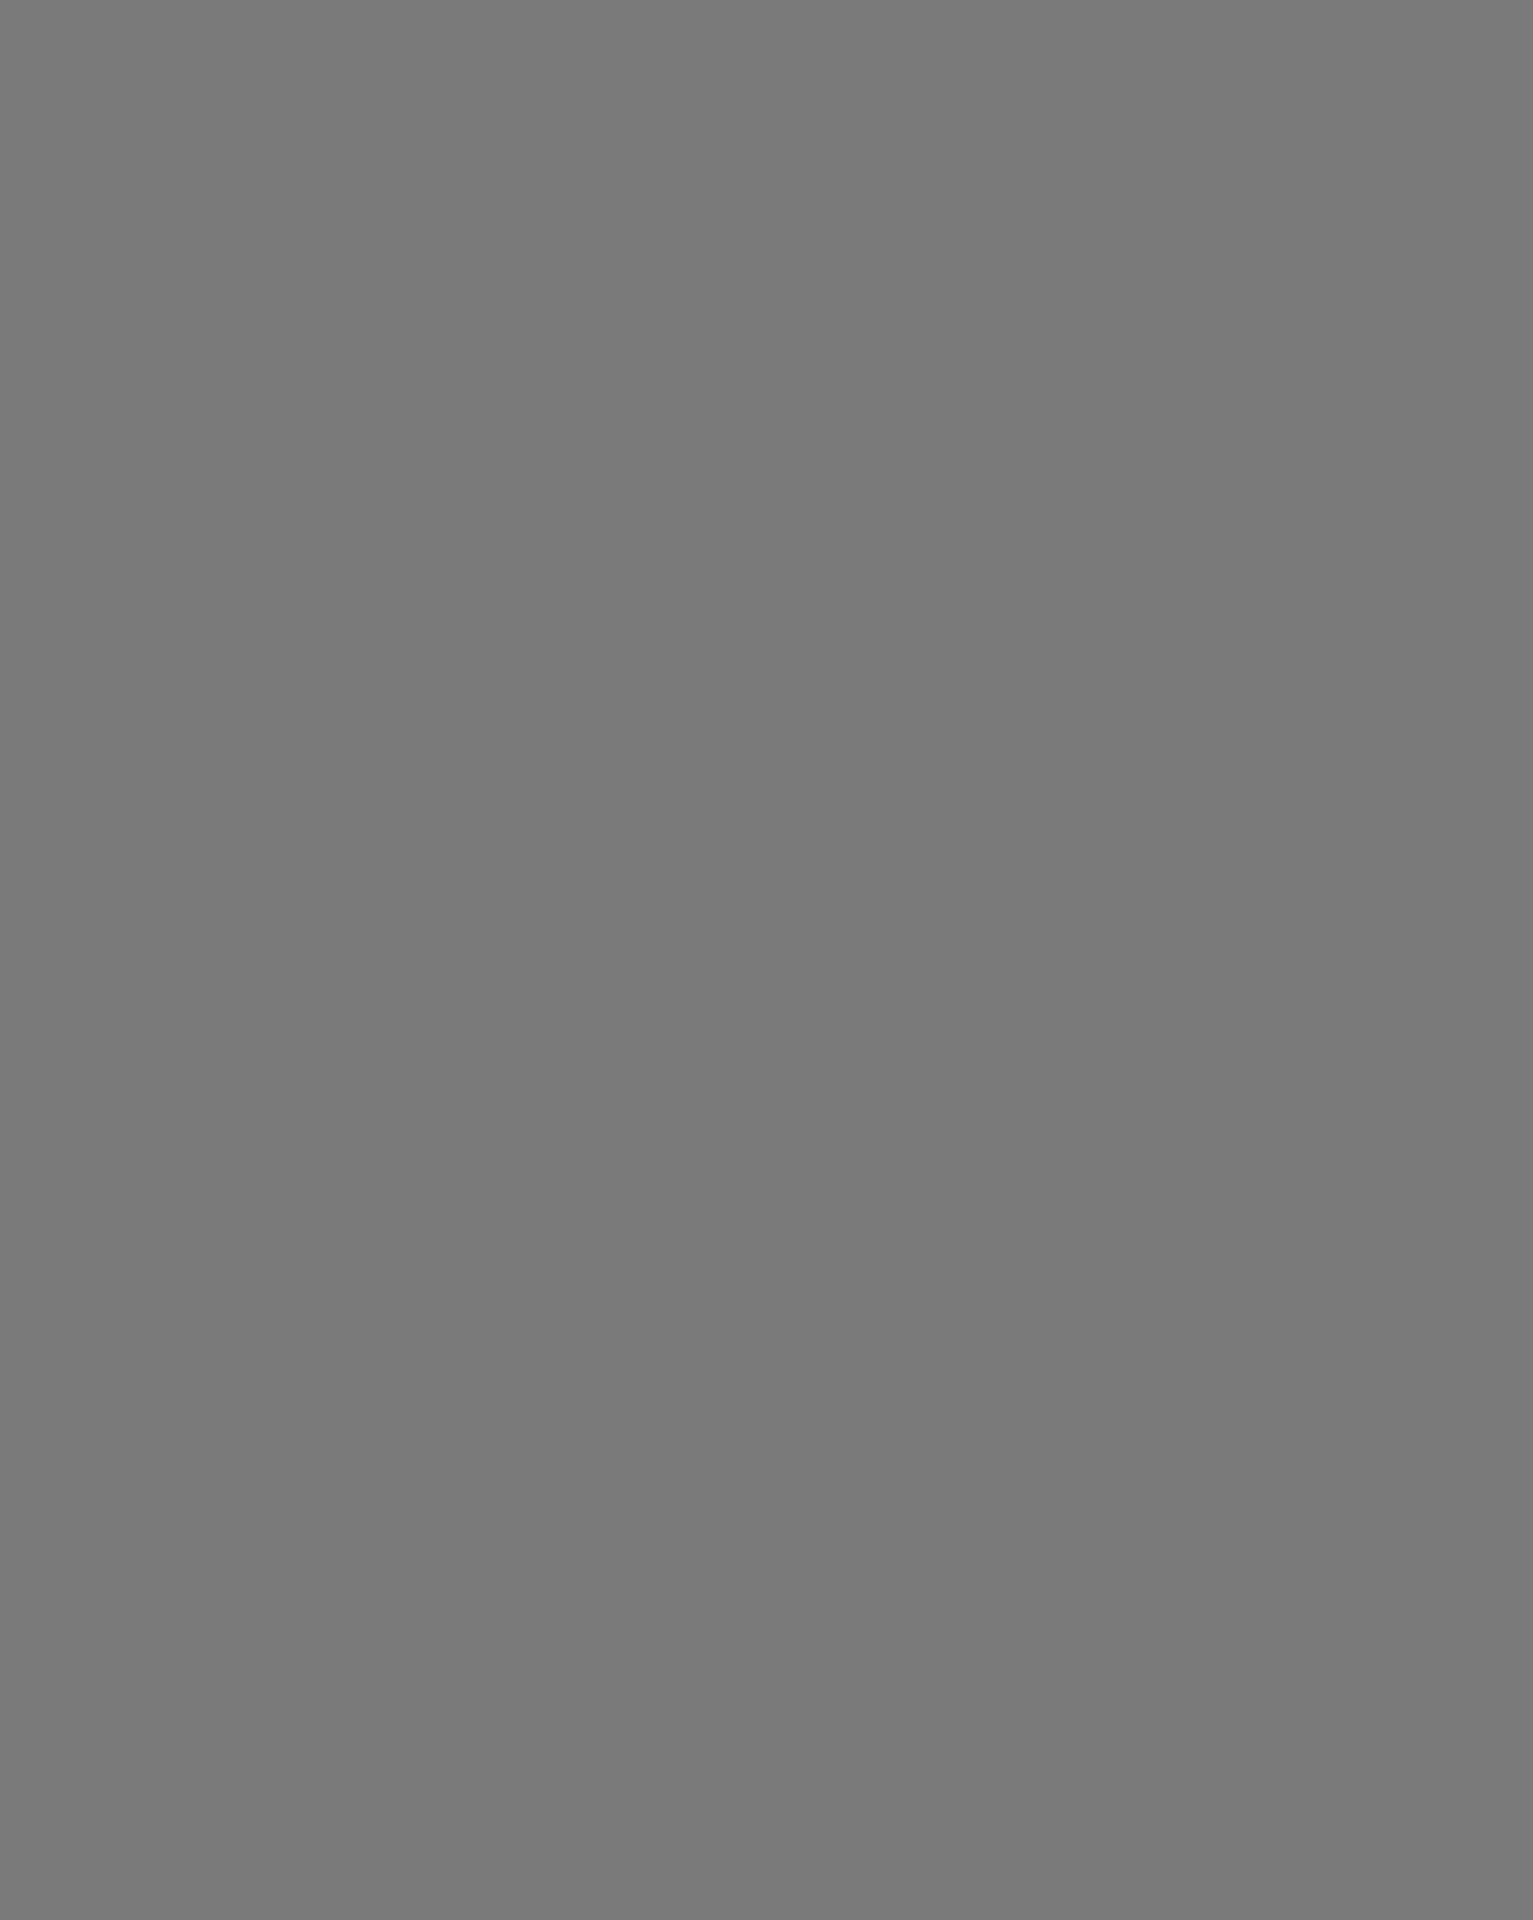 Карл-Эдуард Болин. Сахарница с крышкой. 1896. Государственный Эрмитаж, Санкт-Петербург